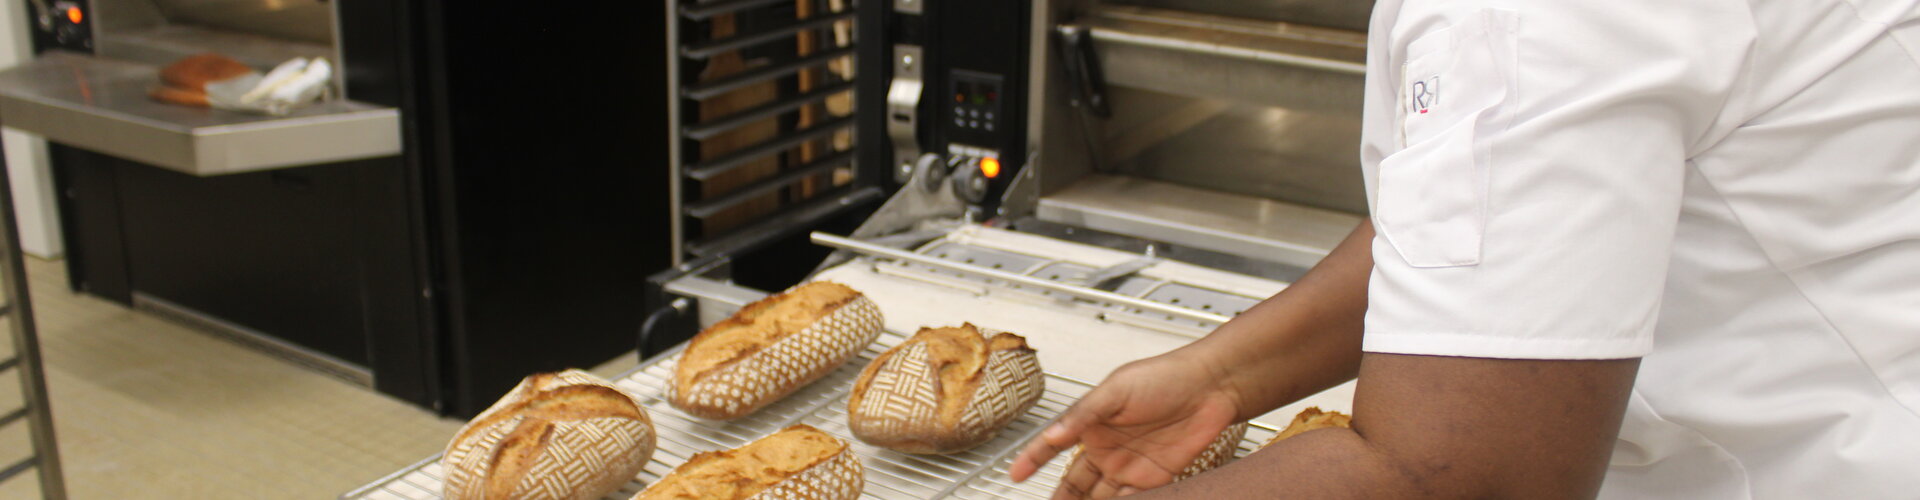 Découvrez l'espace boulangerie de l'Ecole de Boulangerie Christian Vabret